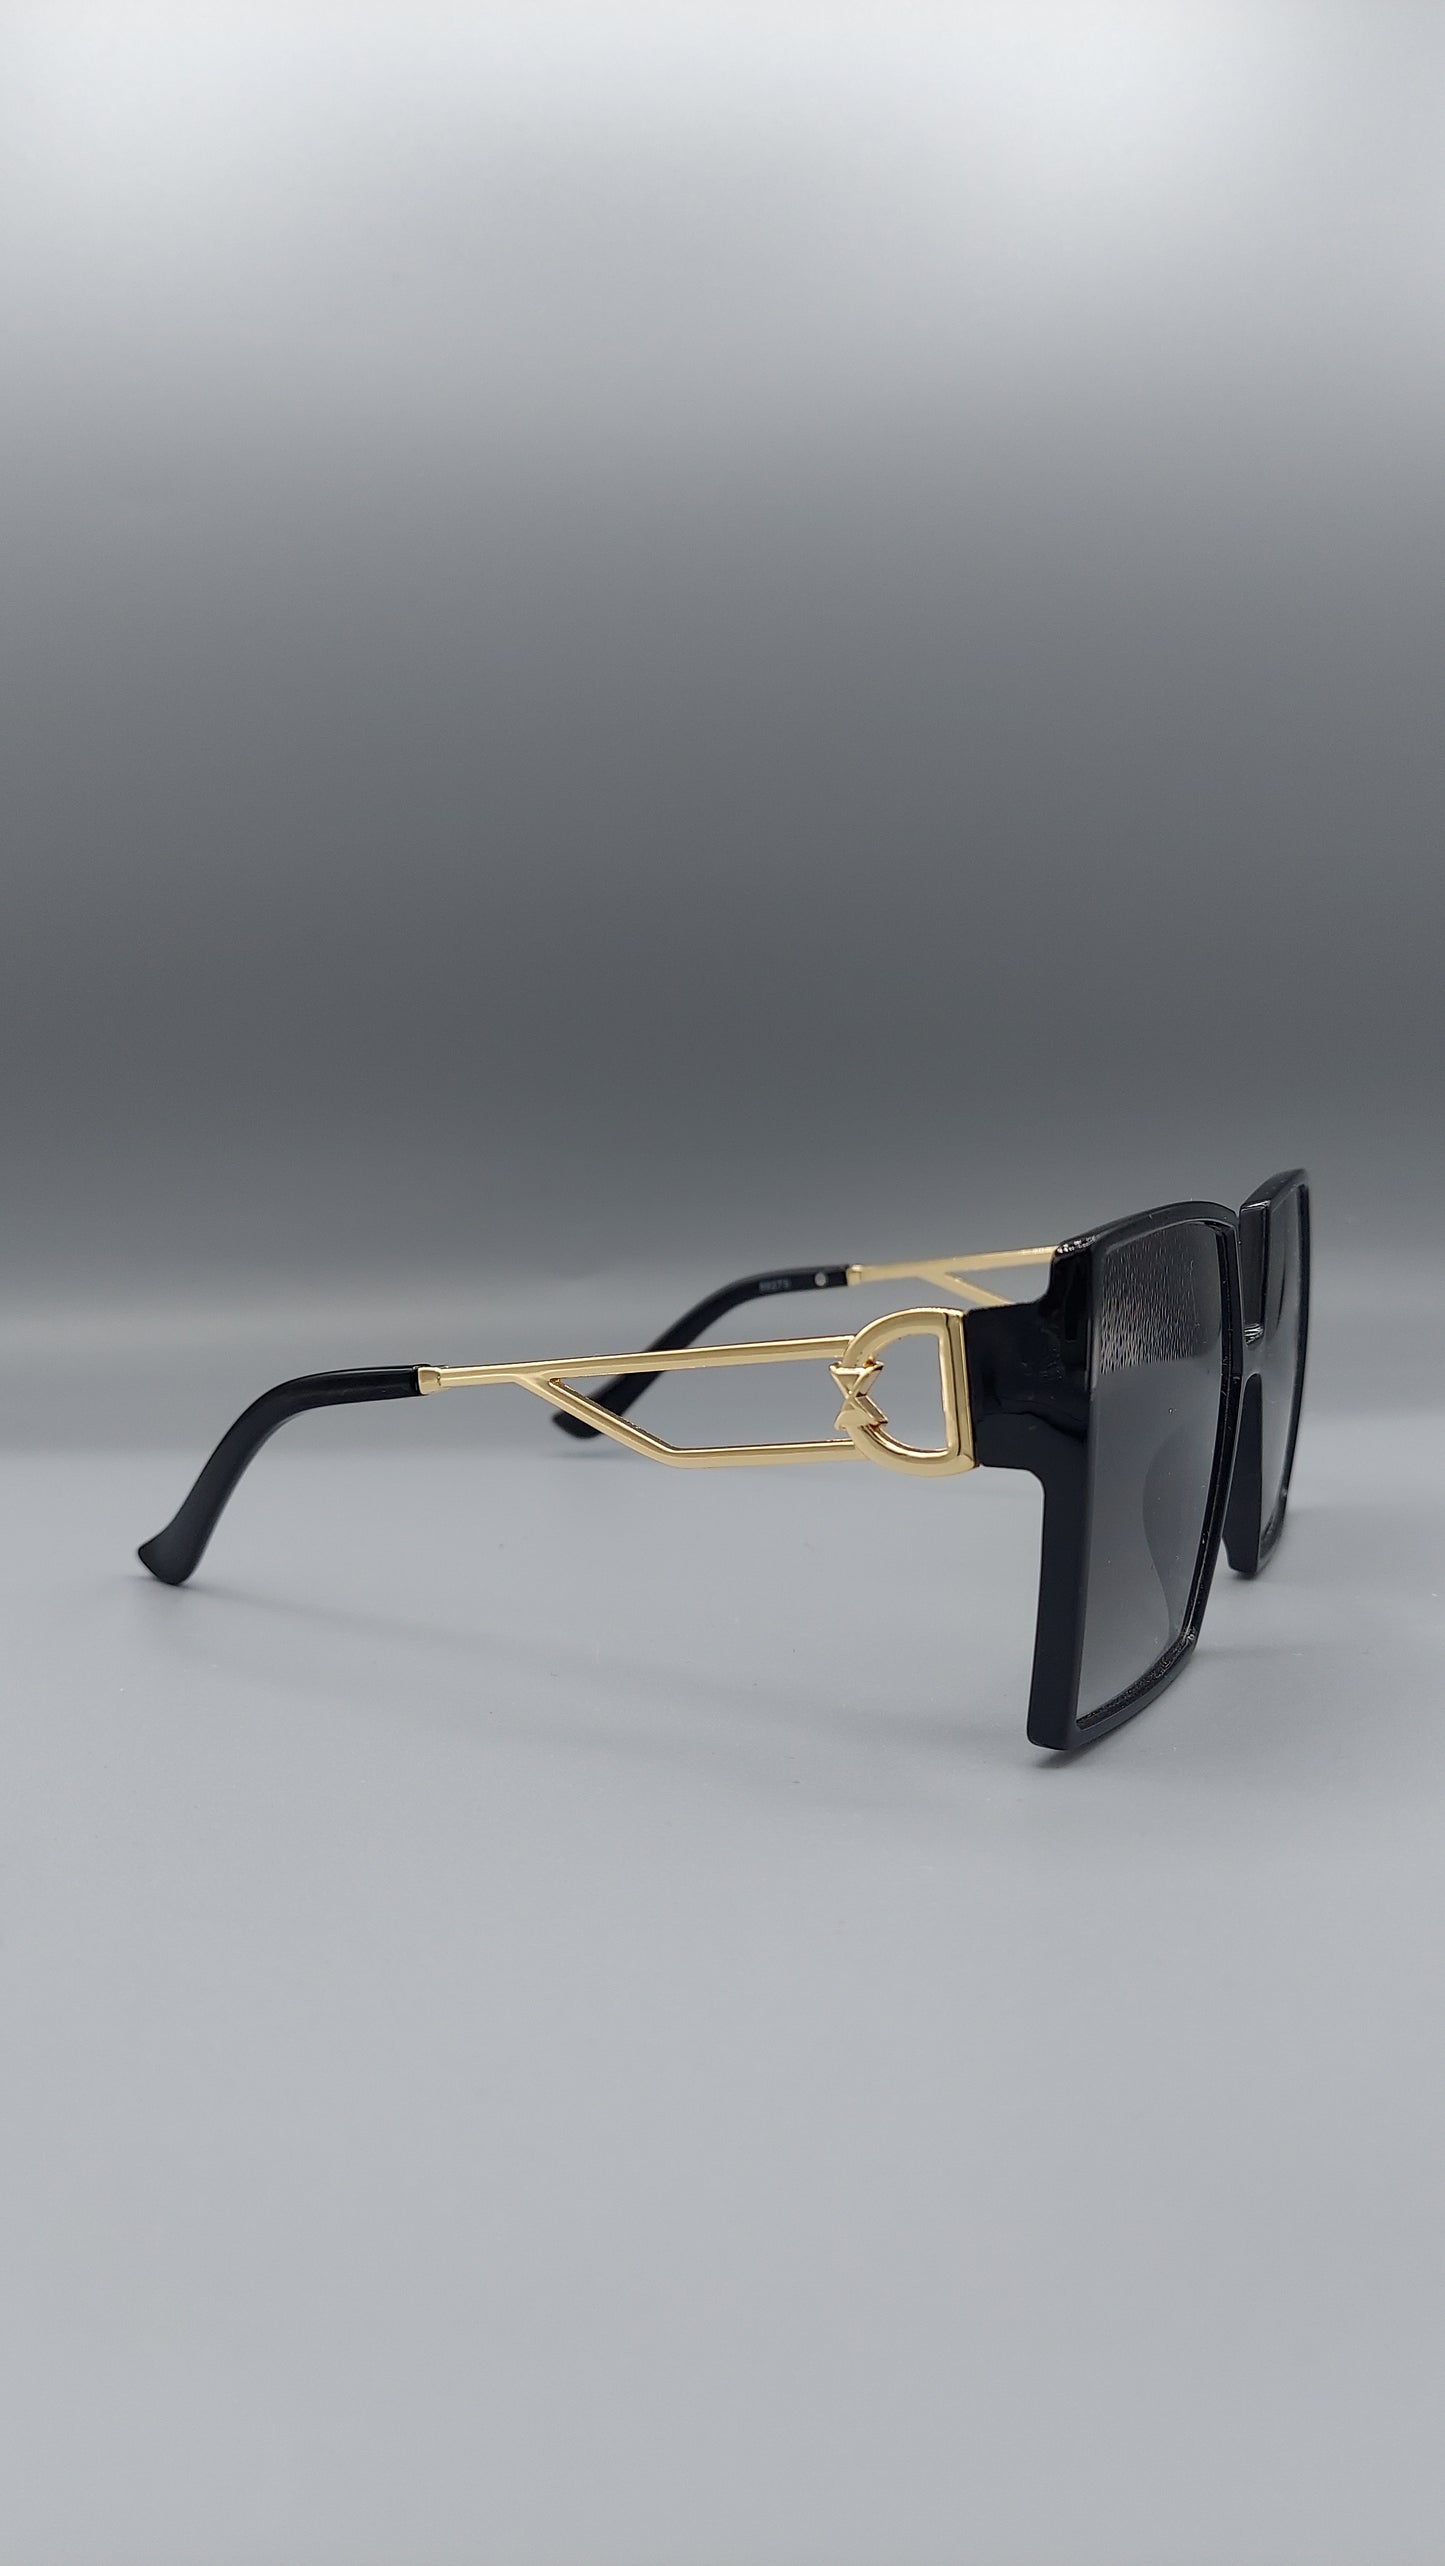 DaniRay Sunglasses